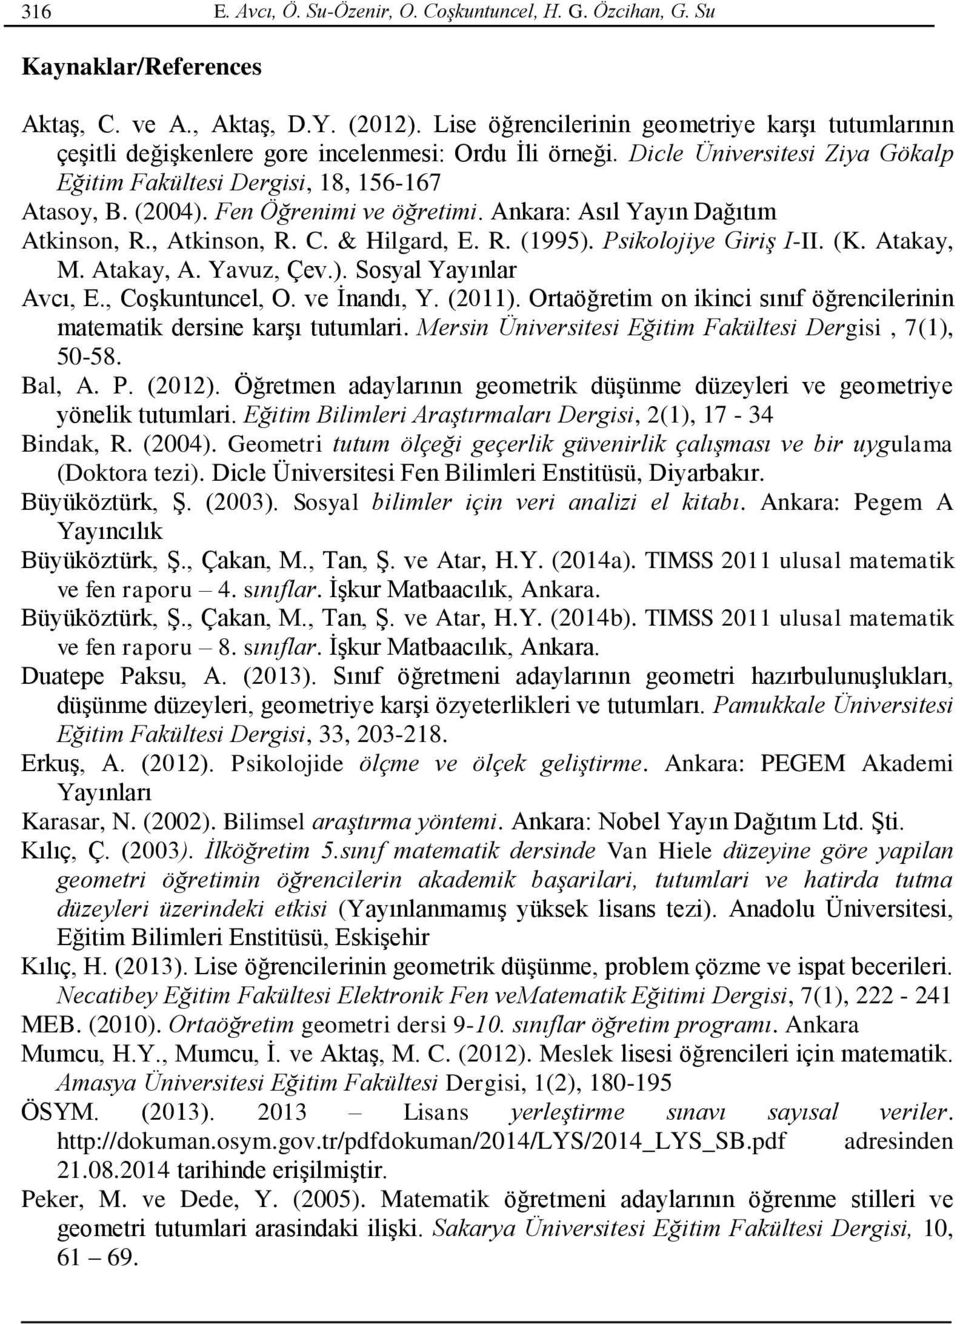 Fen Öğrenimi ve öğretimi. Ankara: Asıl Yayın Dağıtım Atkinson, R., Atkinson, R. C. & Hilgard, E. R. (1995). Psikolojiye Giriş I-II. (K. Atakay, M. Atakay, A. Yavuz, Çev.). Sosyal Yayınlar Avcı, E.